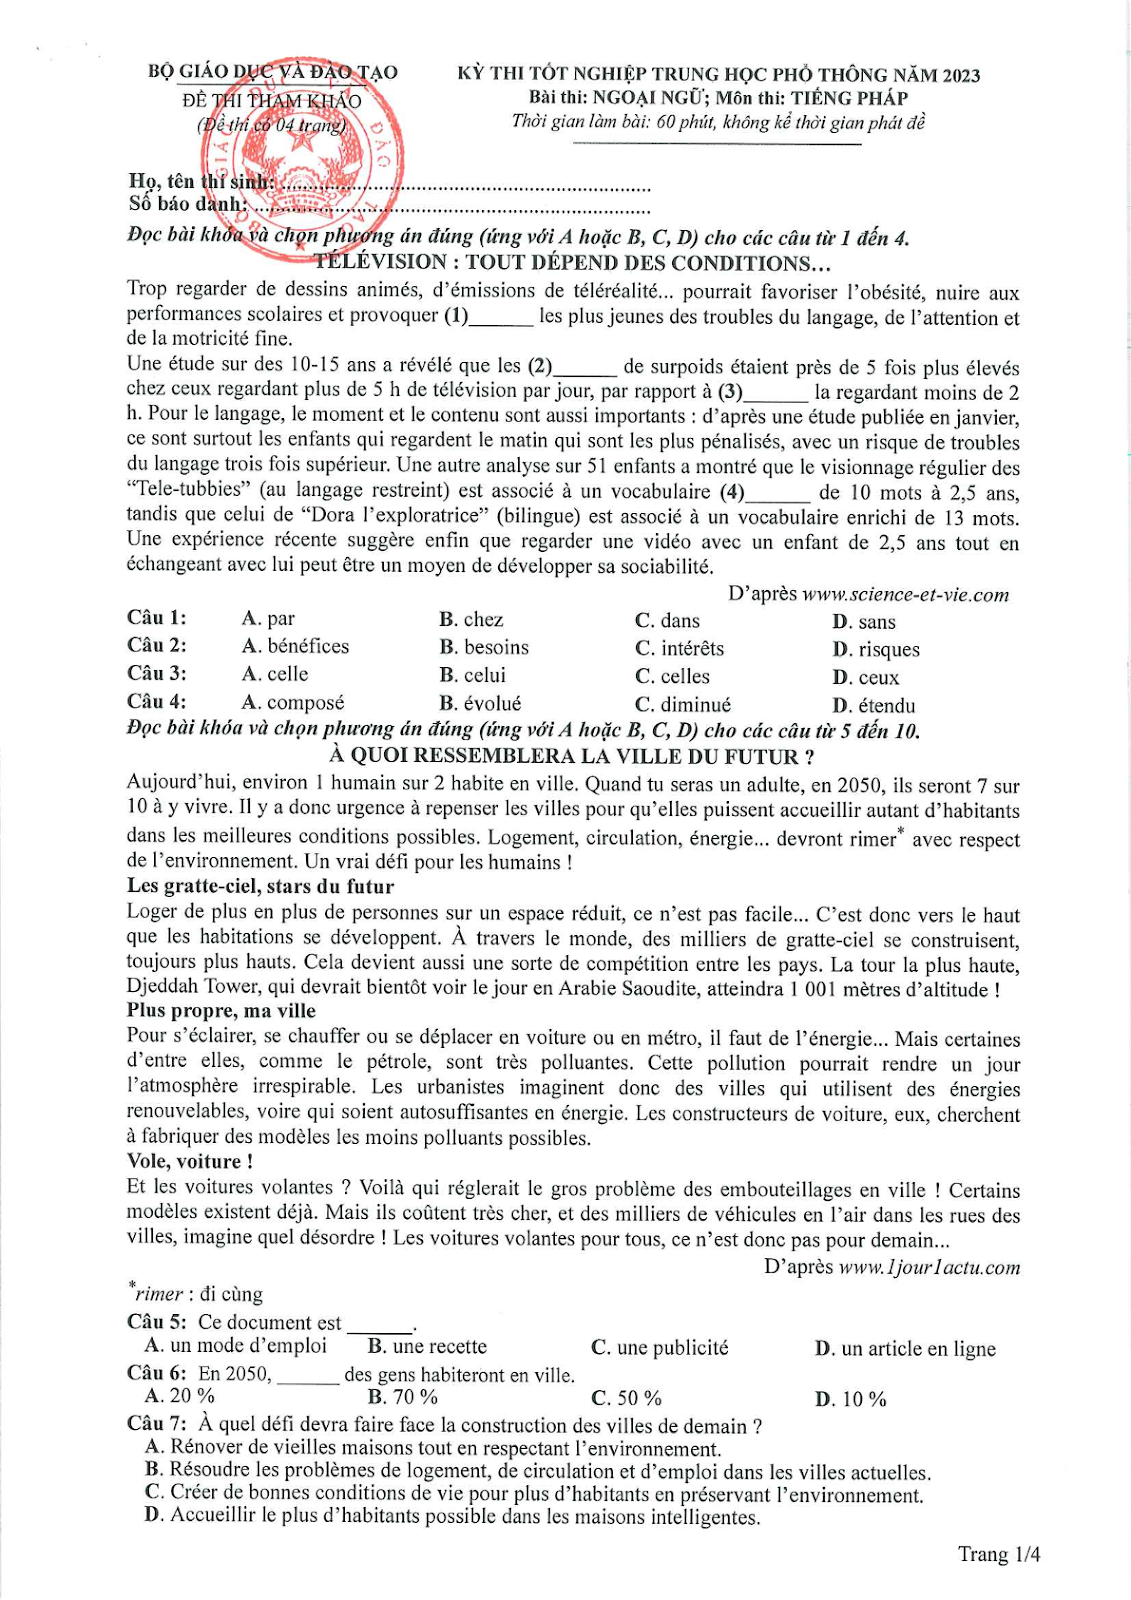 Đề minh hoạ thi THPT Quốc gia 2023 môn Tiếng Pháp 1